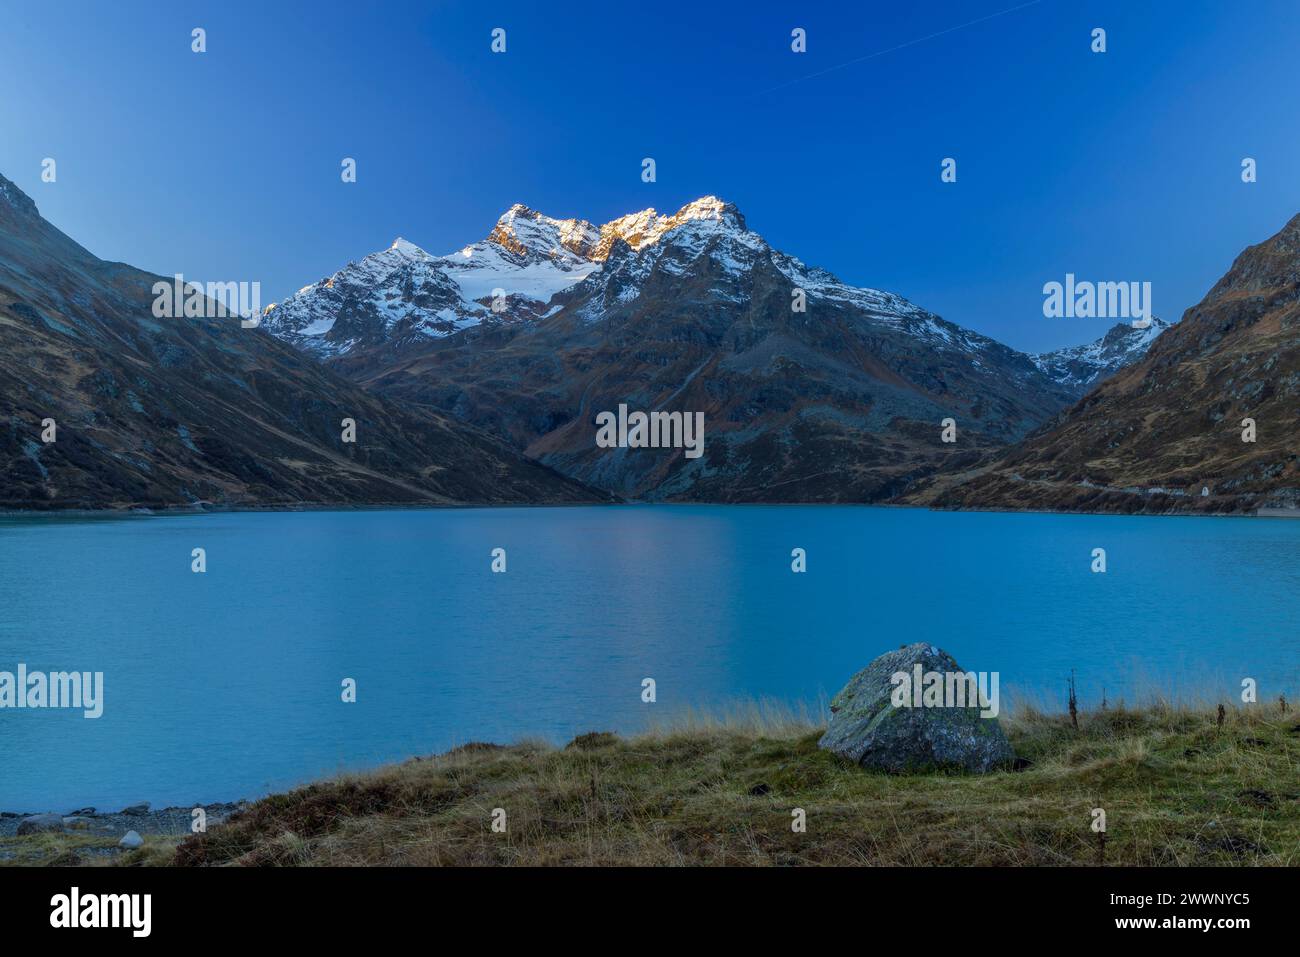 Typical landscape near Silvrettasee, Vorarlberg, Austria Stock Photo